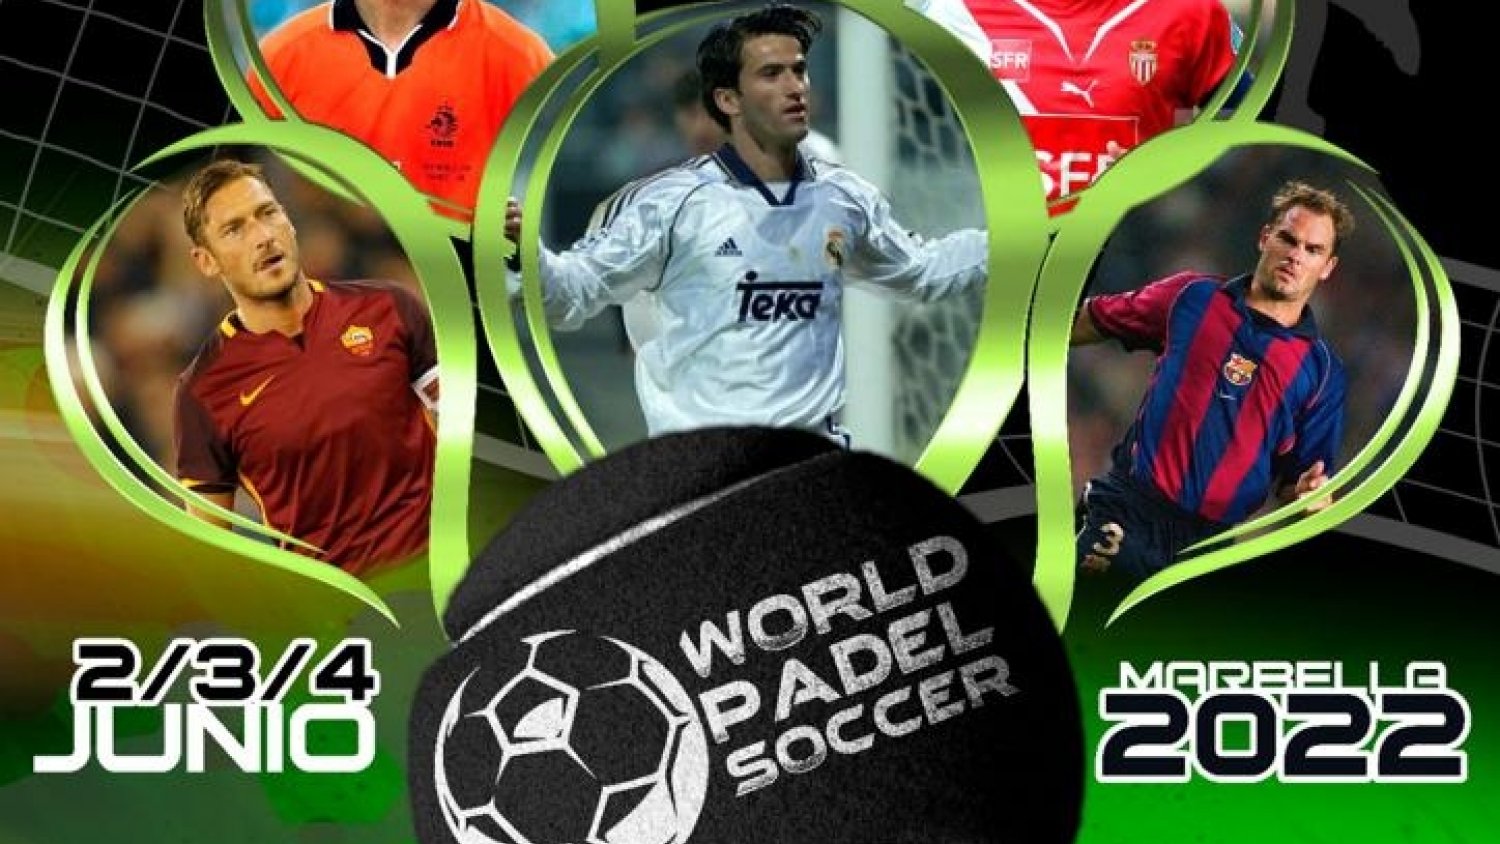 Leyendas del fútbol como Totti o Panucci compiten en el World Pádel Soccer